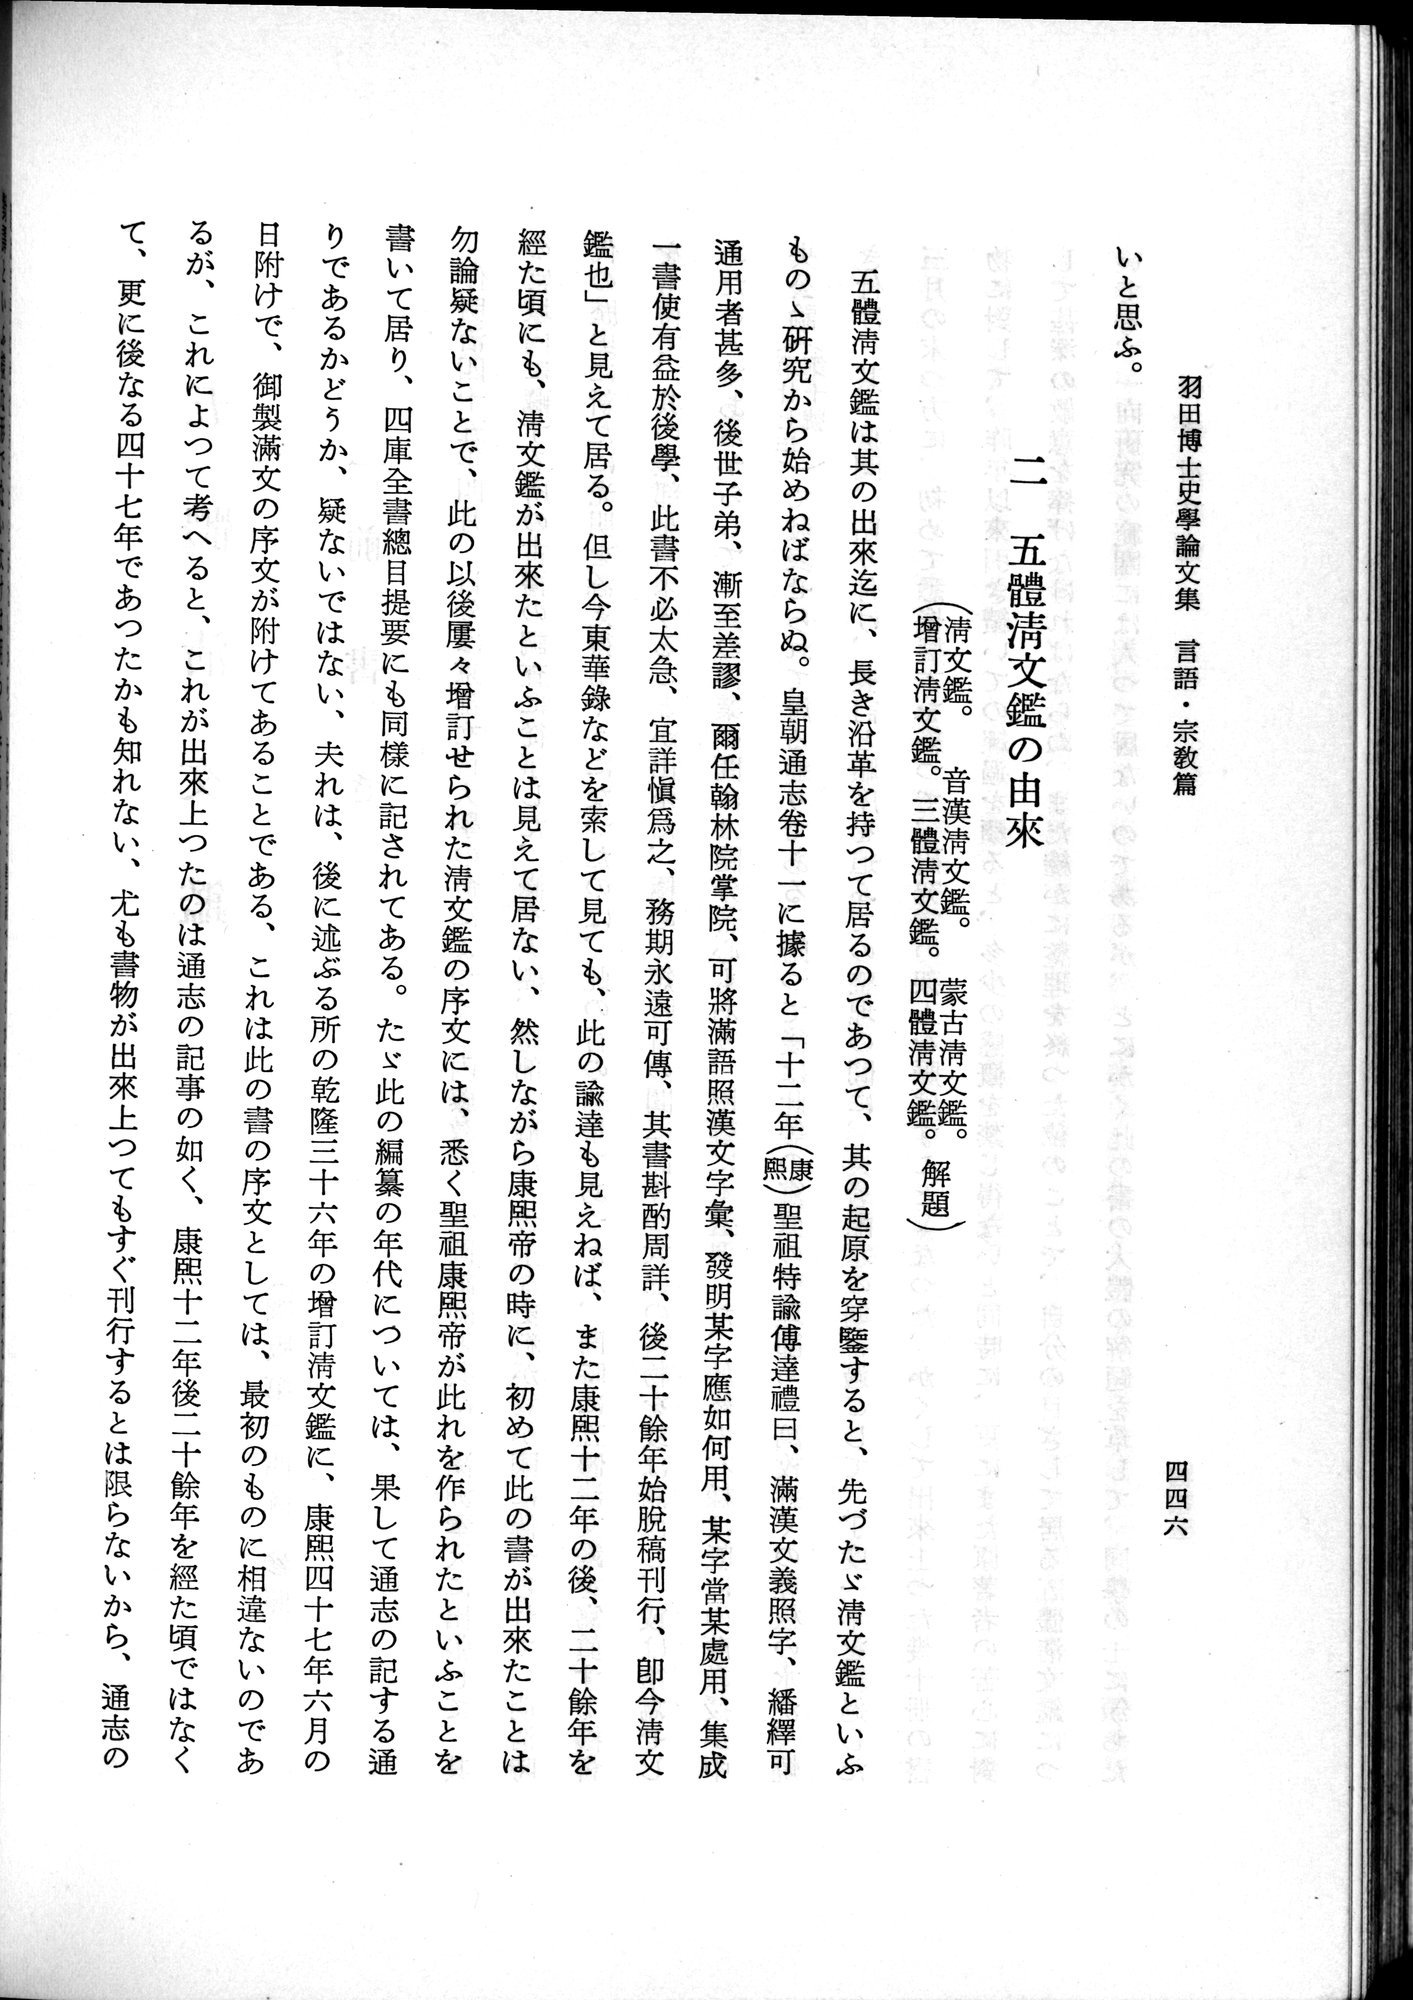 羽田博士史学論文集 : vol.2 / 508 ページ（白黒高解像度画像）